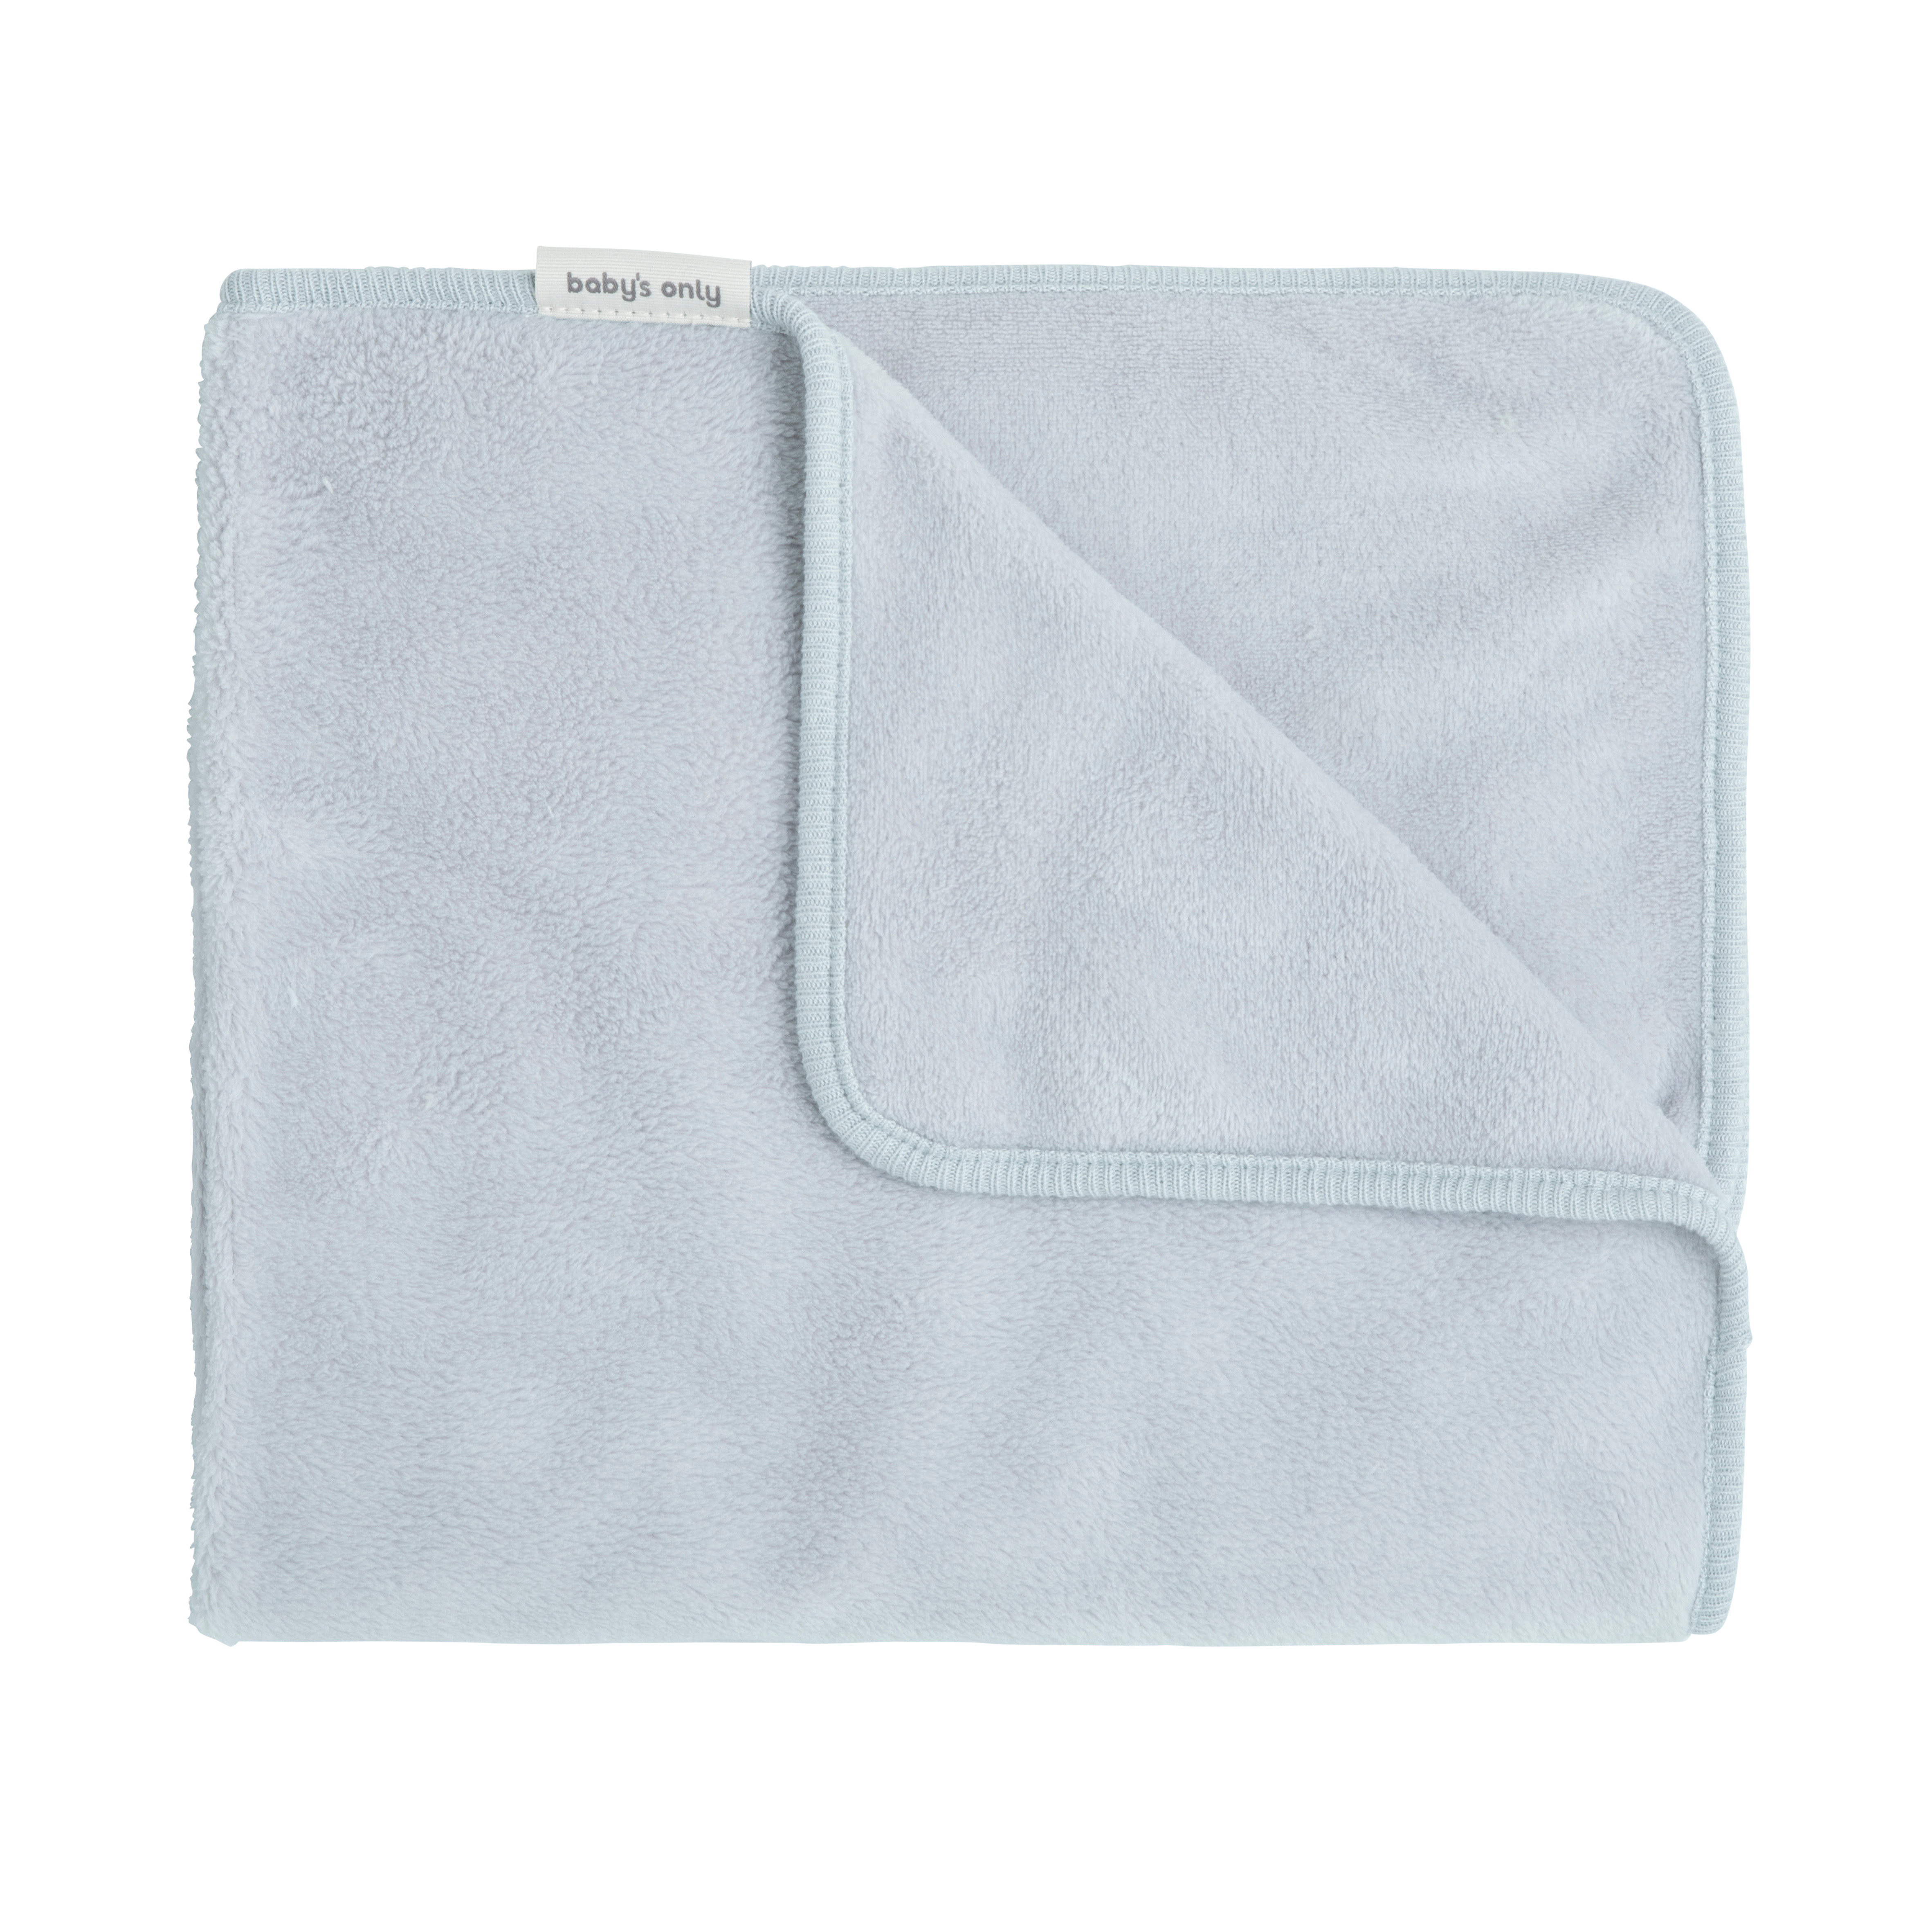 Newborn blanket Cozy misty blue - 65x75 cm